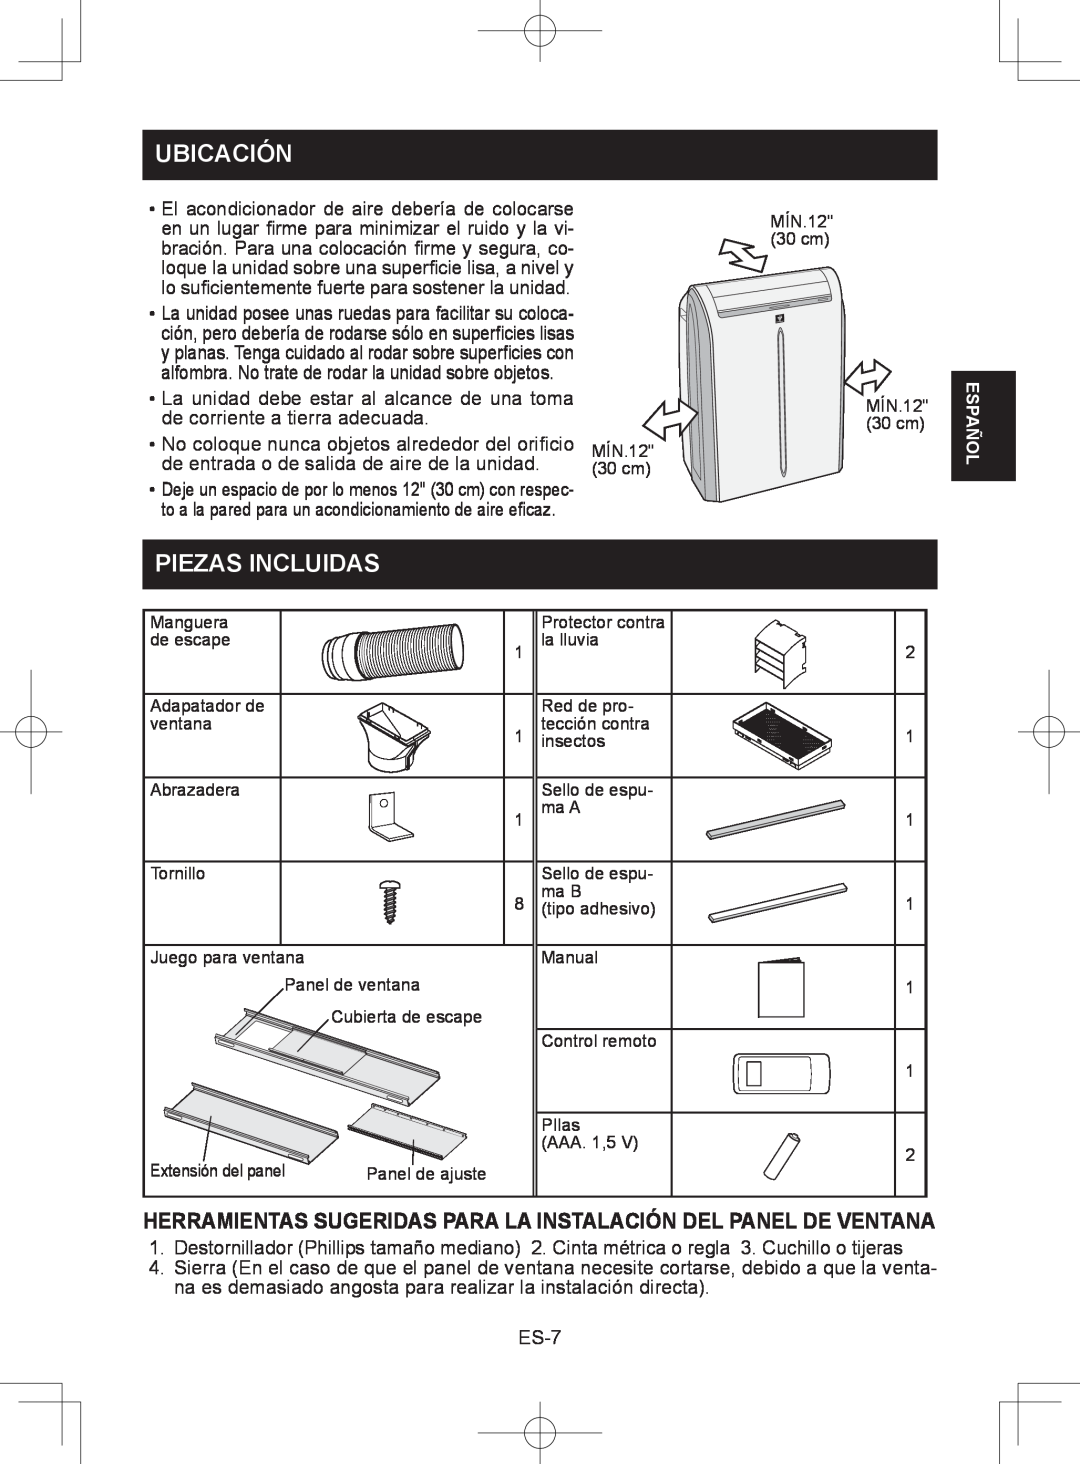 Sharp CV-2P10SC operation manual Ubicación, Piezas Incluidas, No coloque nunca objetos alrededor del oriﬁcio, ES-7, Español 